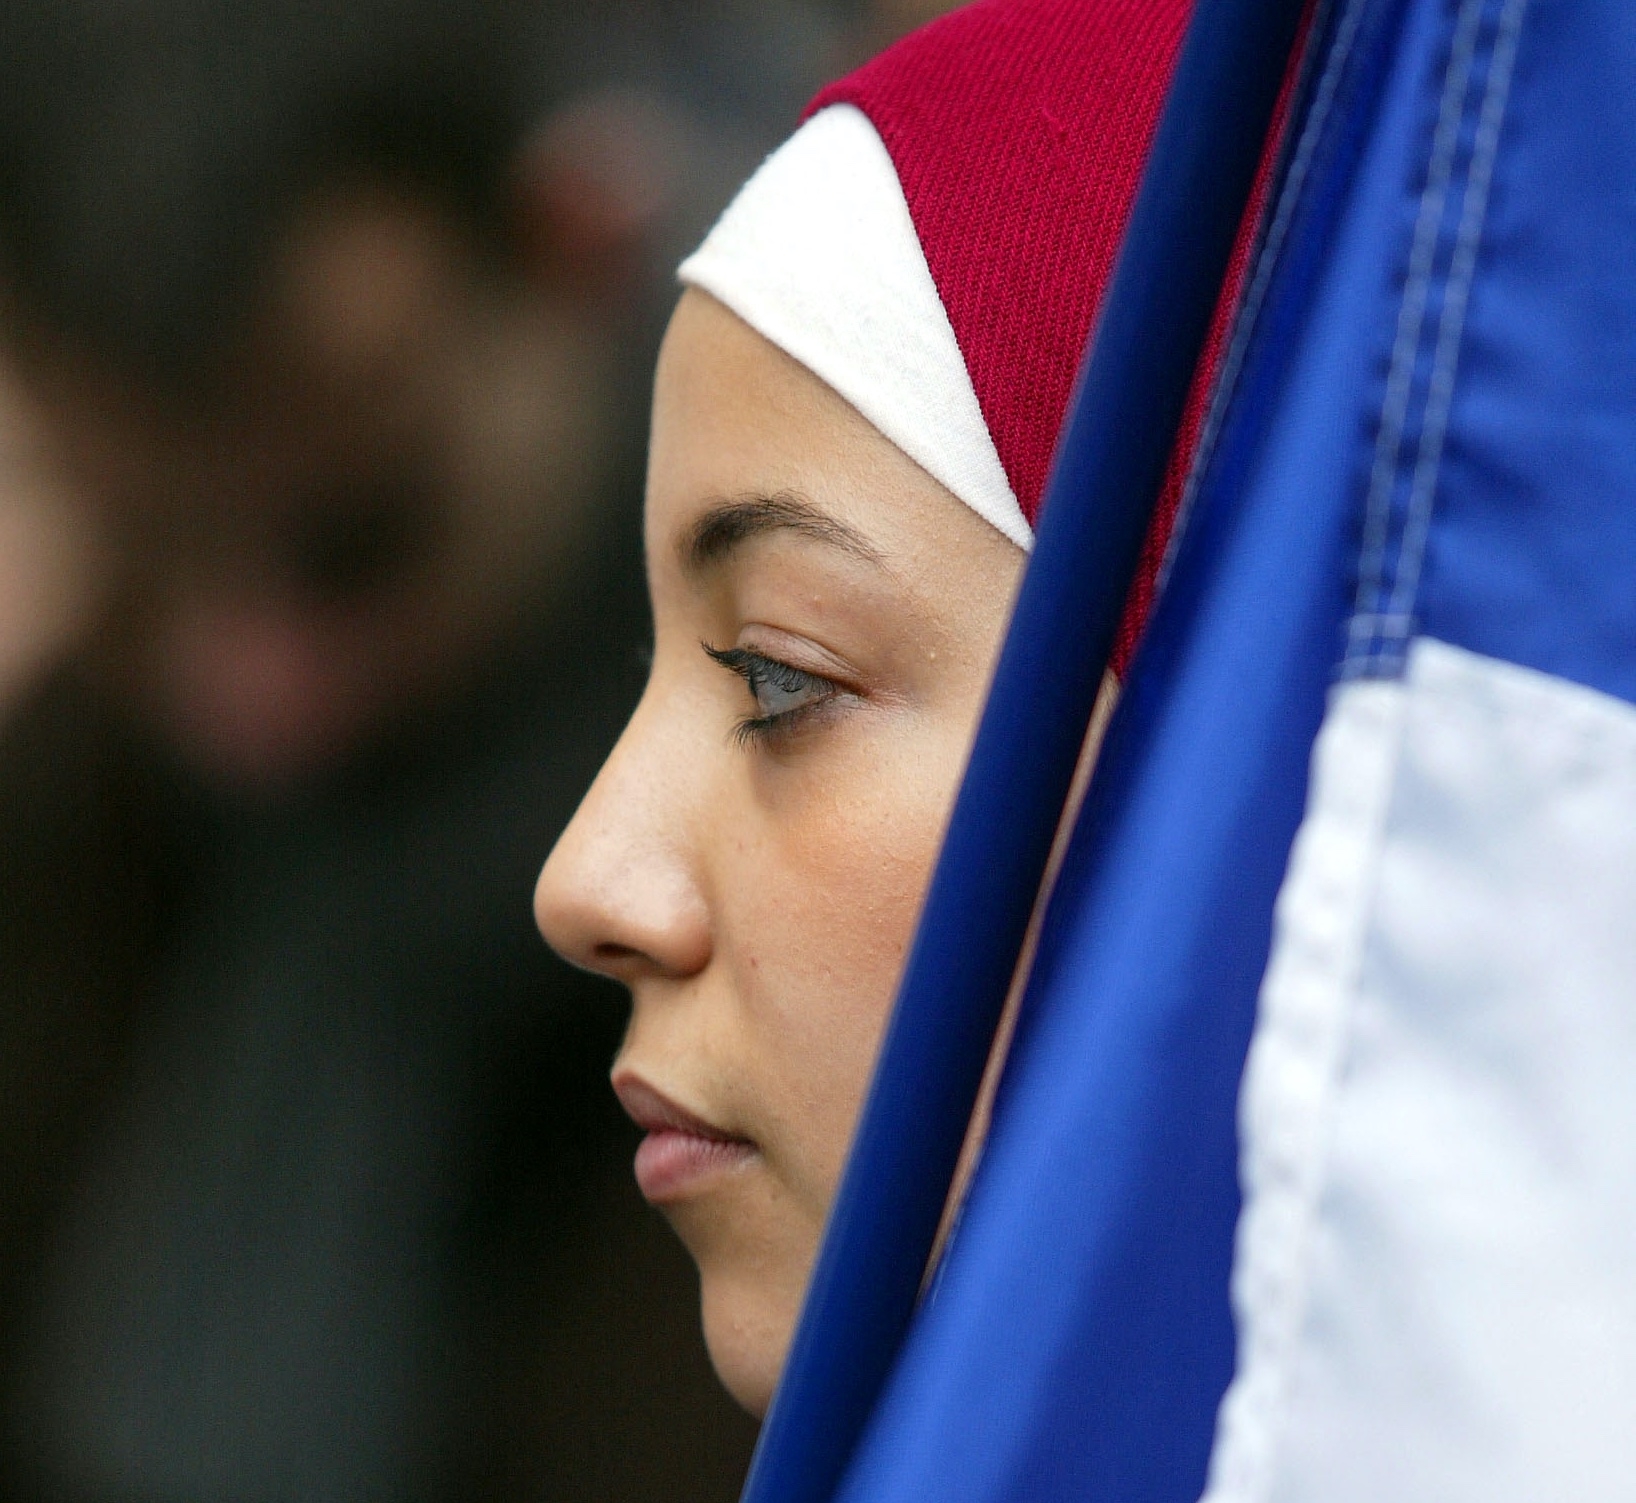 Pour Éric Zemmour, l’islam n’est pas « compatible avec la France » et le voile doit être interdit dans l’espace public (AFP/Jean-Pierre Muller)